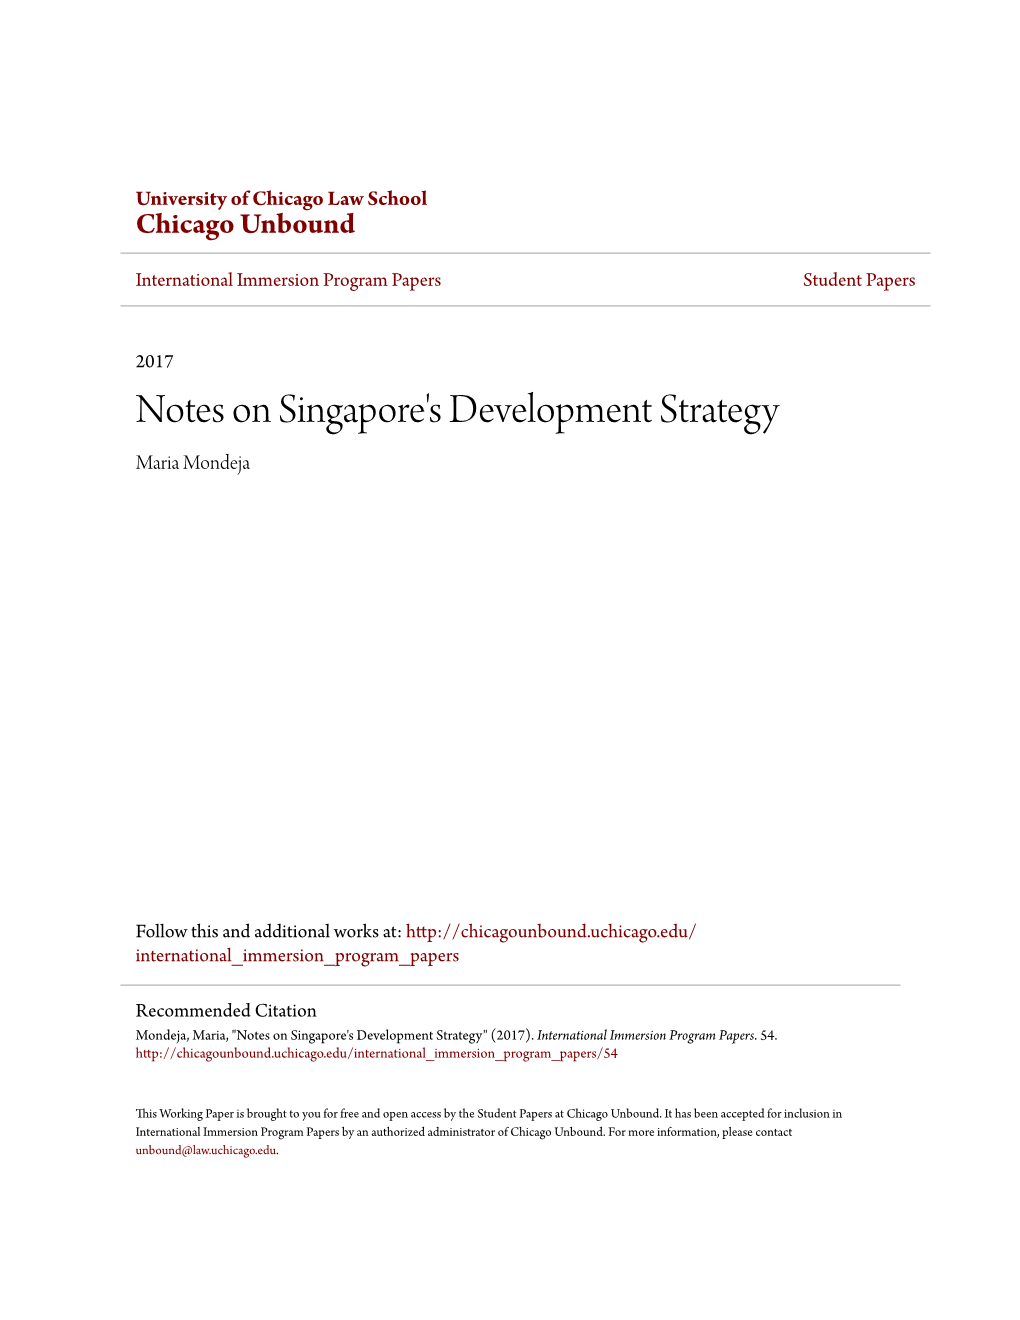 Notes on Singapore's Development Strategy Maria Mondeja